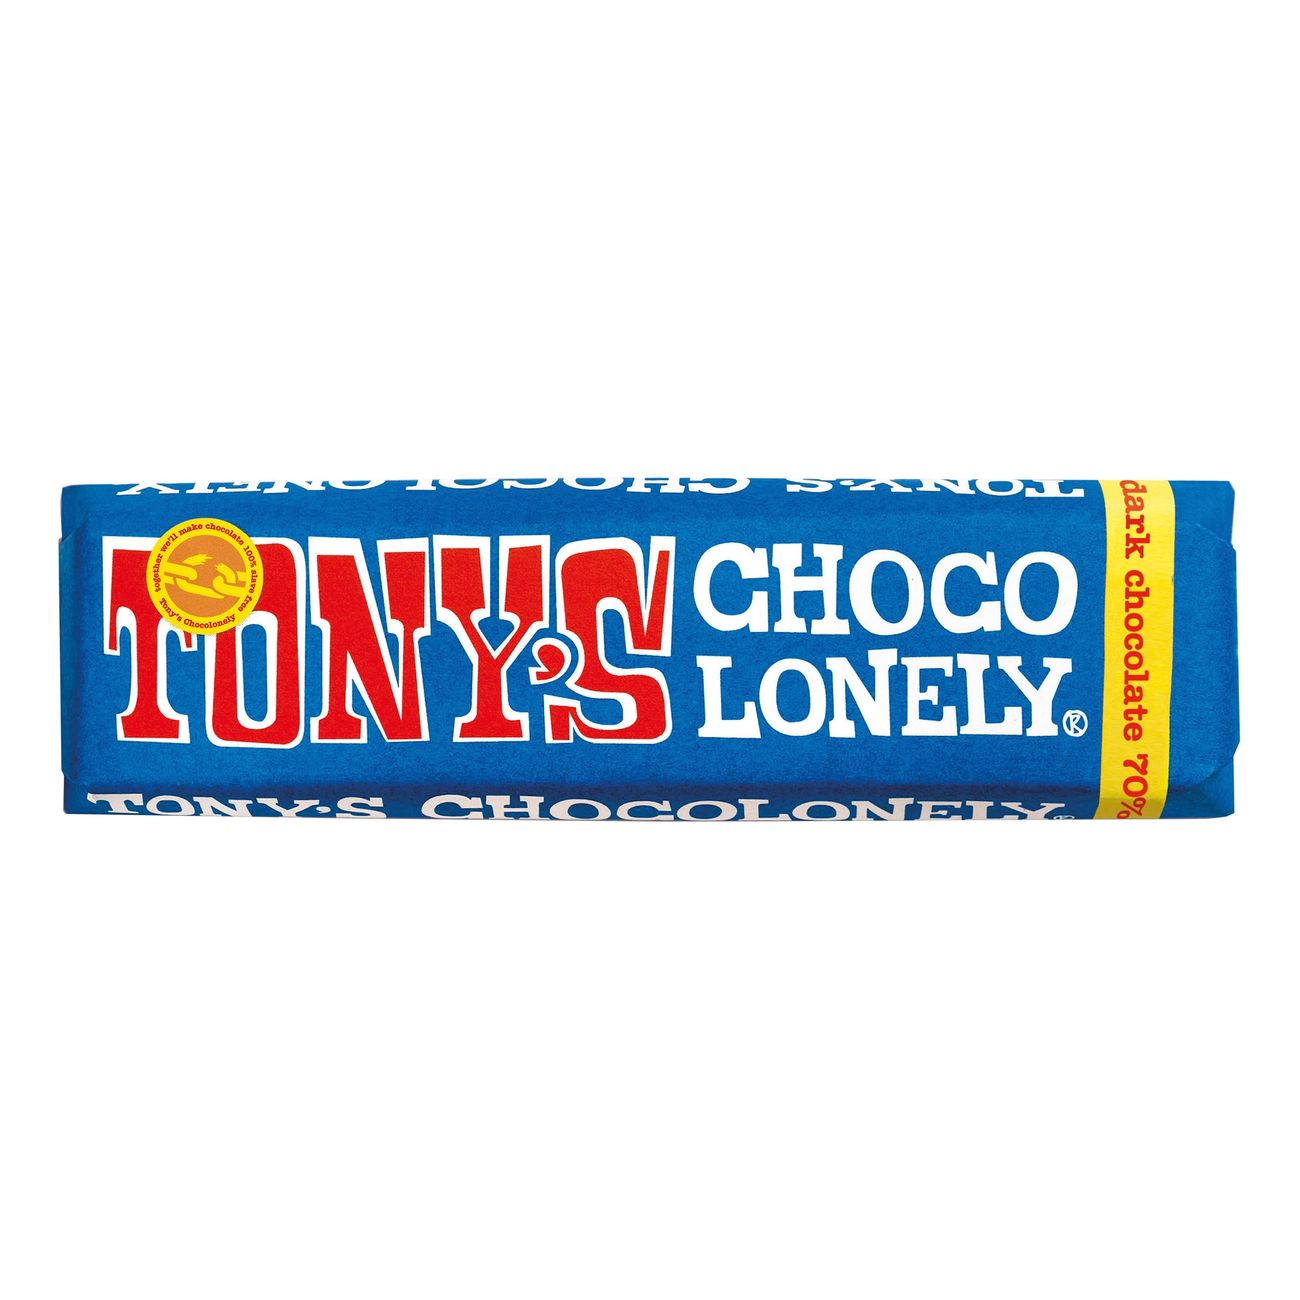 tonys-chocolonely-dark-chocolate-83690-2